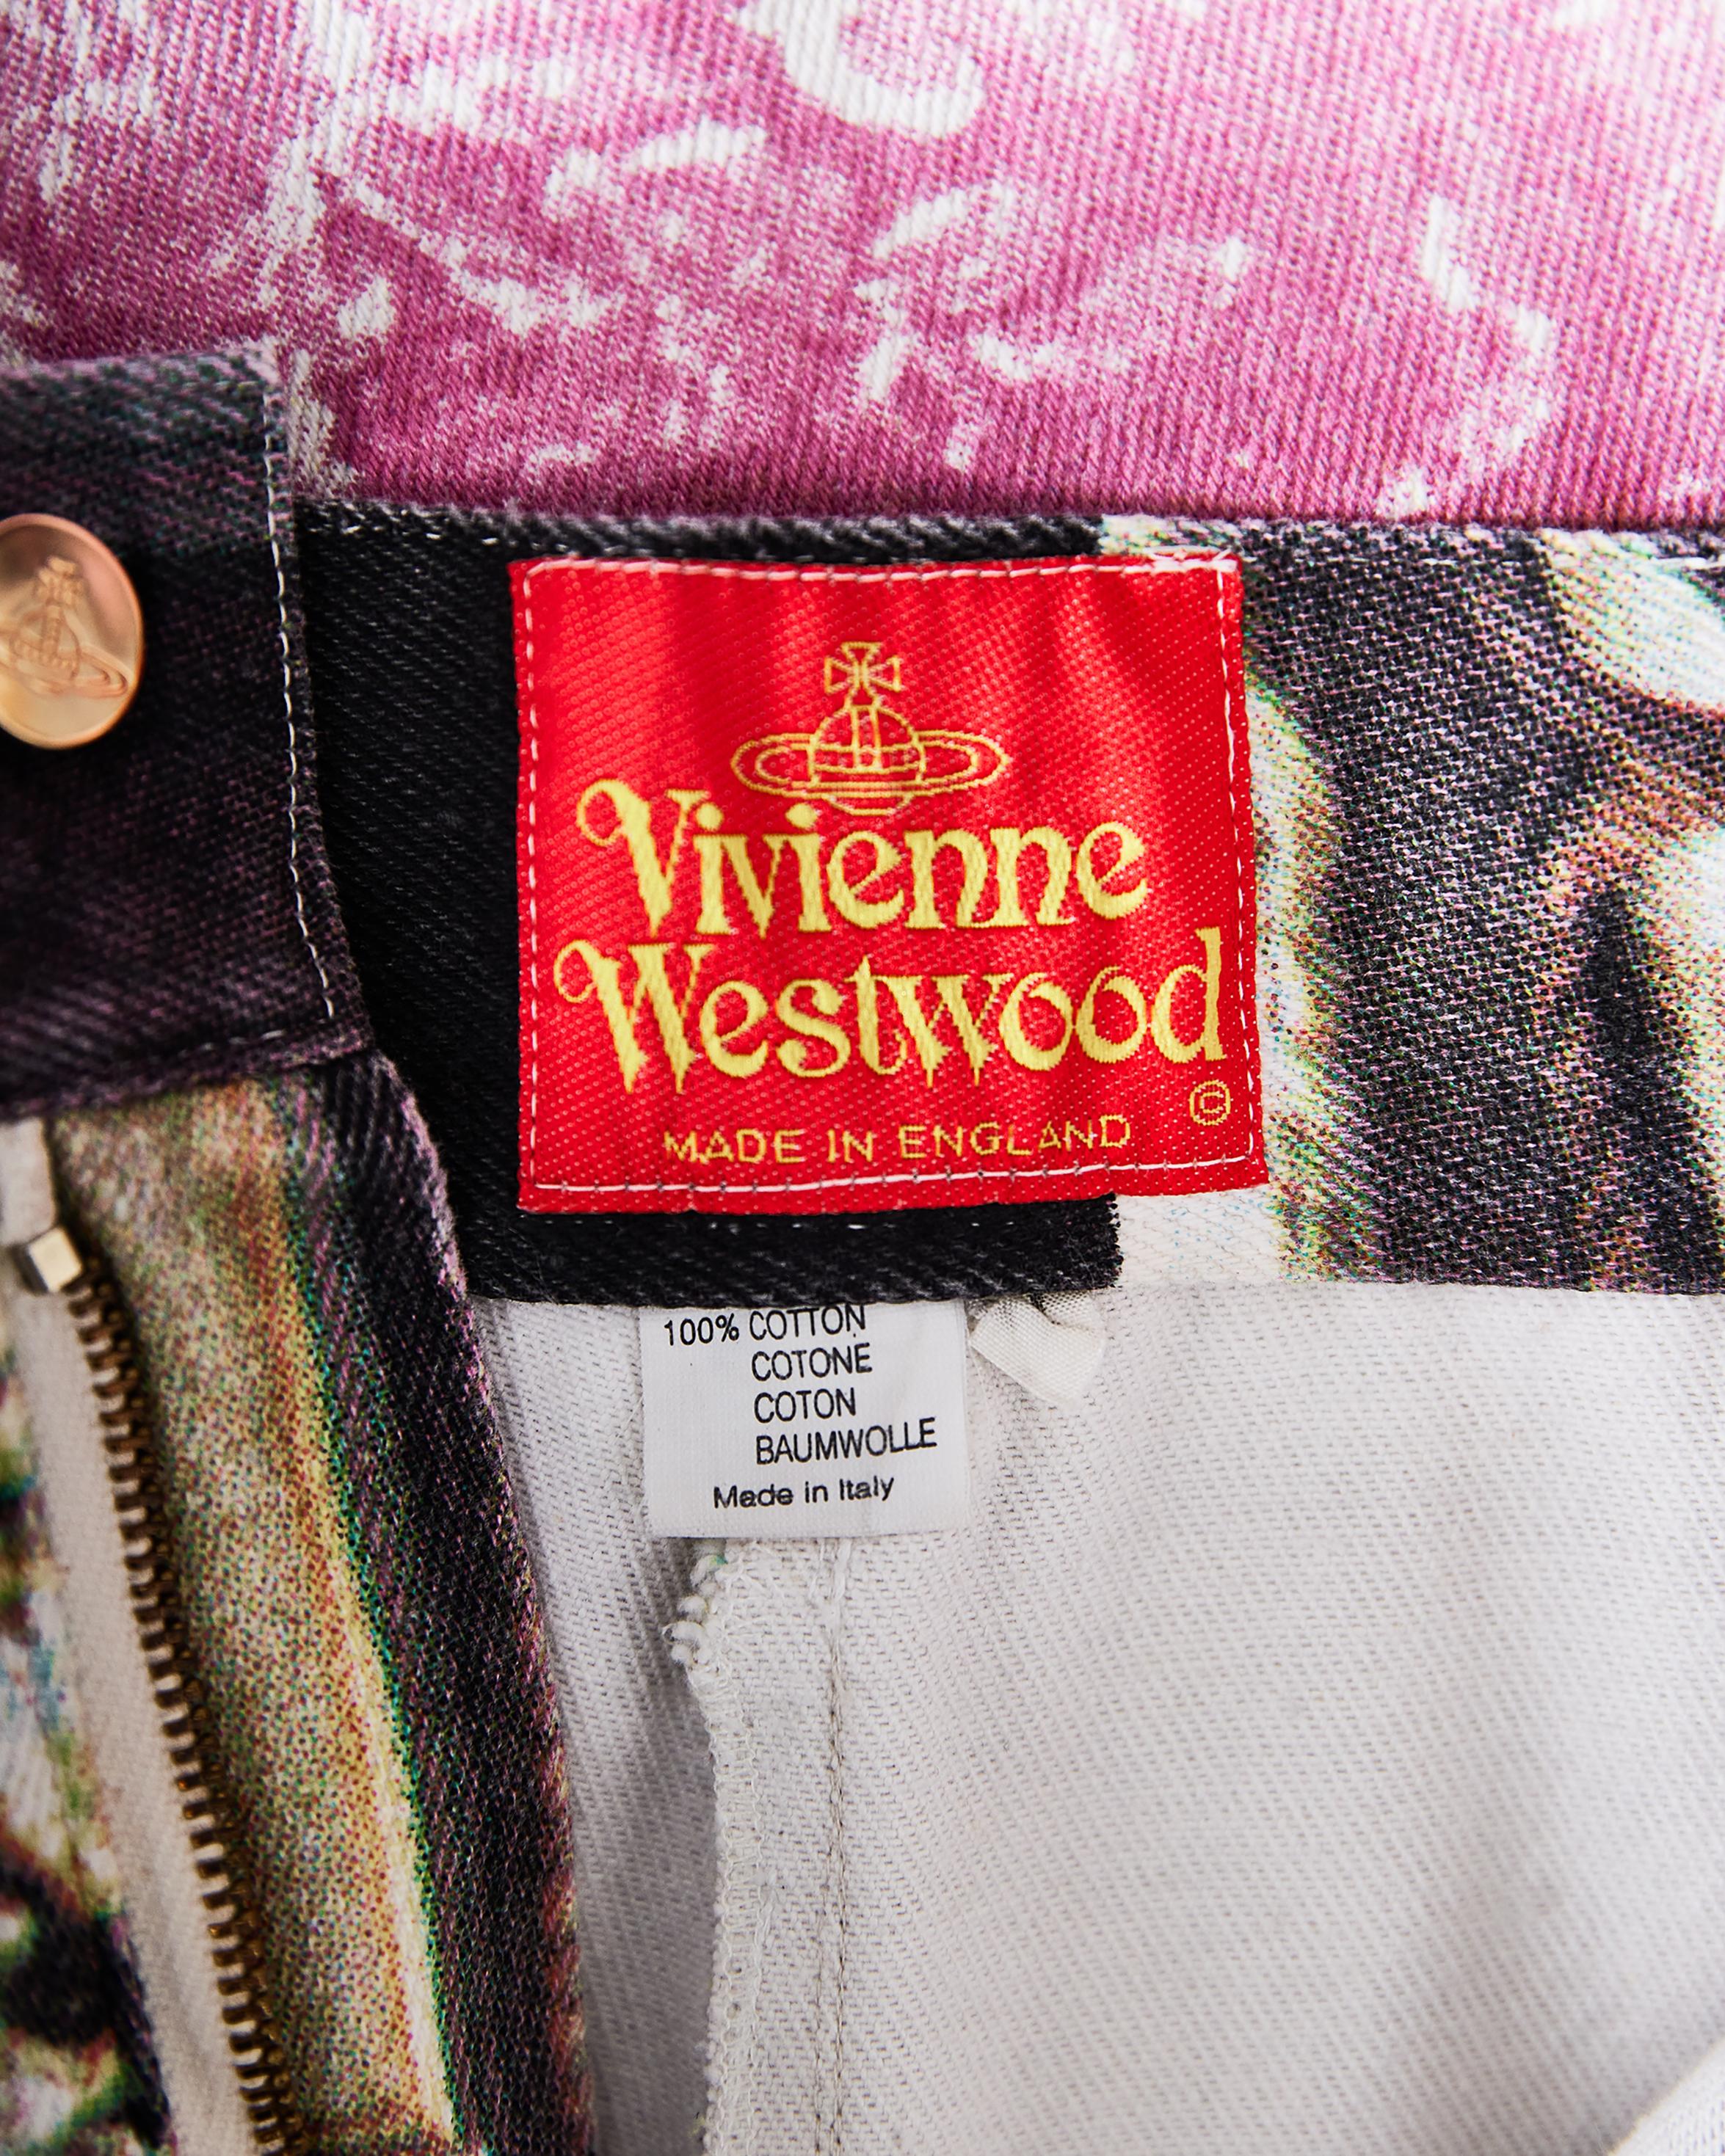 S/S 1992 Vivienne Westwood Salon Print Denim Pants For Sale 3